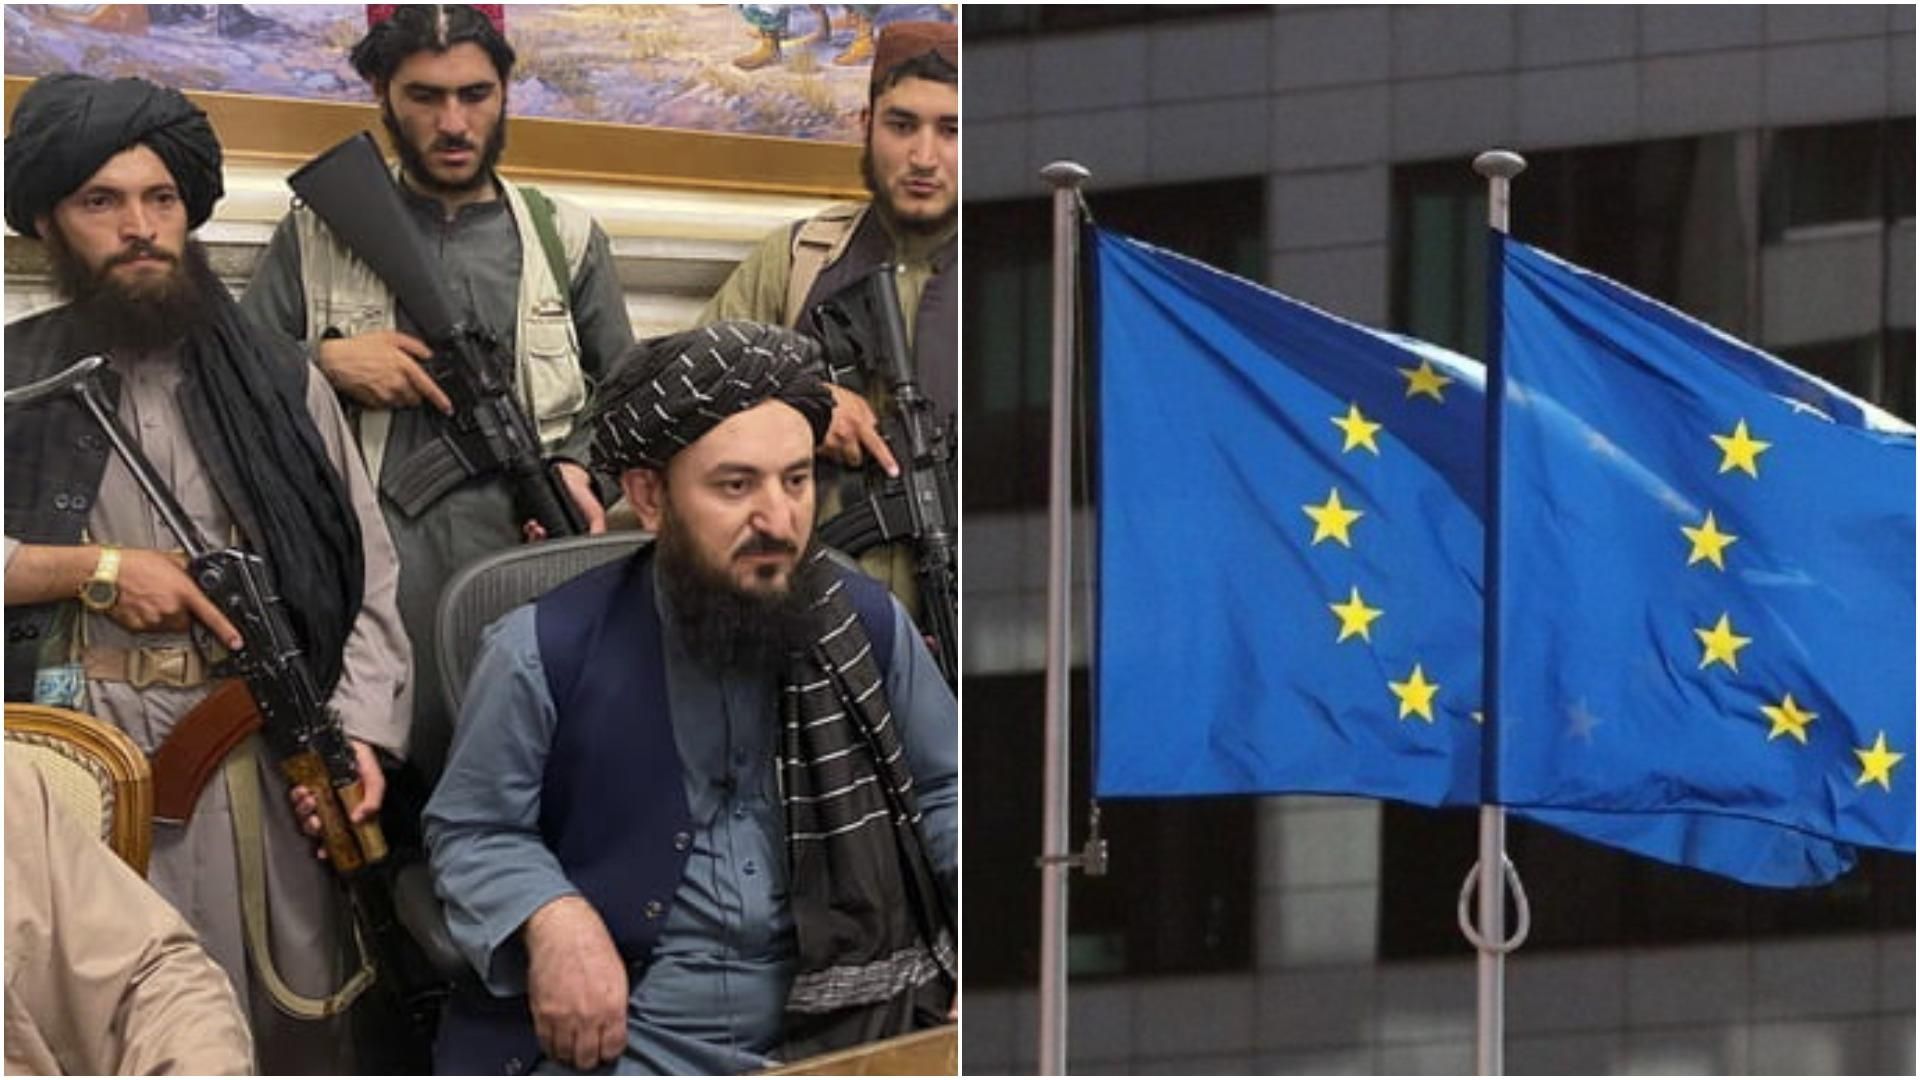 ЕС планирует в течение месяца открыть посольство в Афганистане